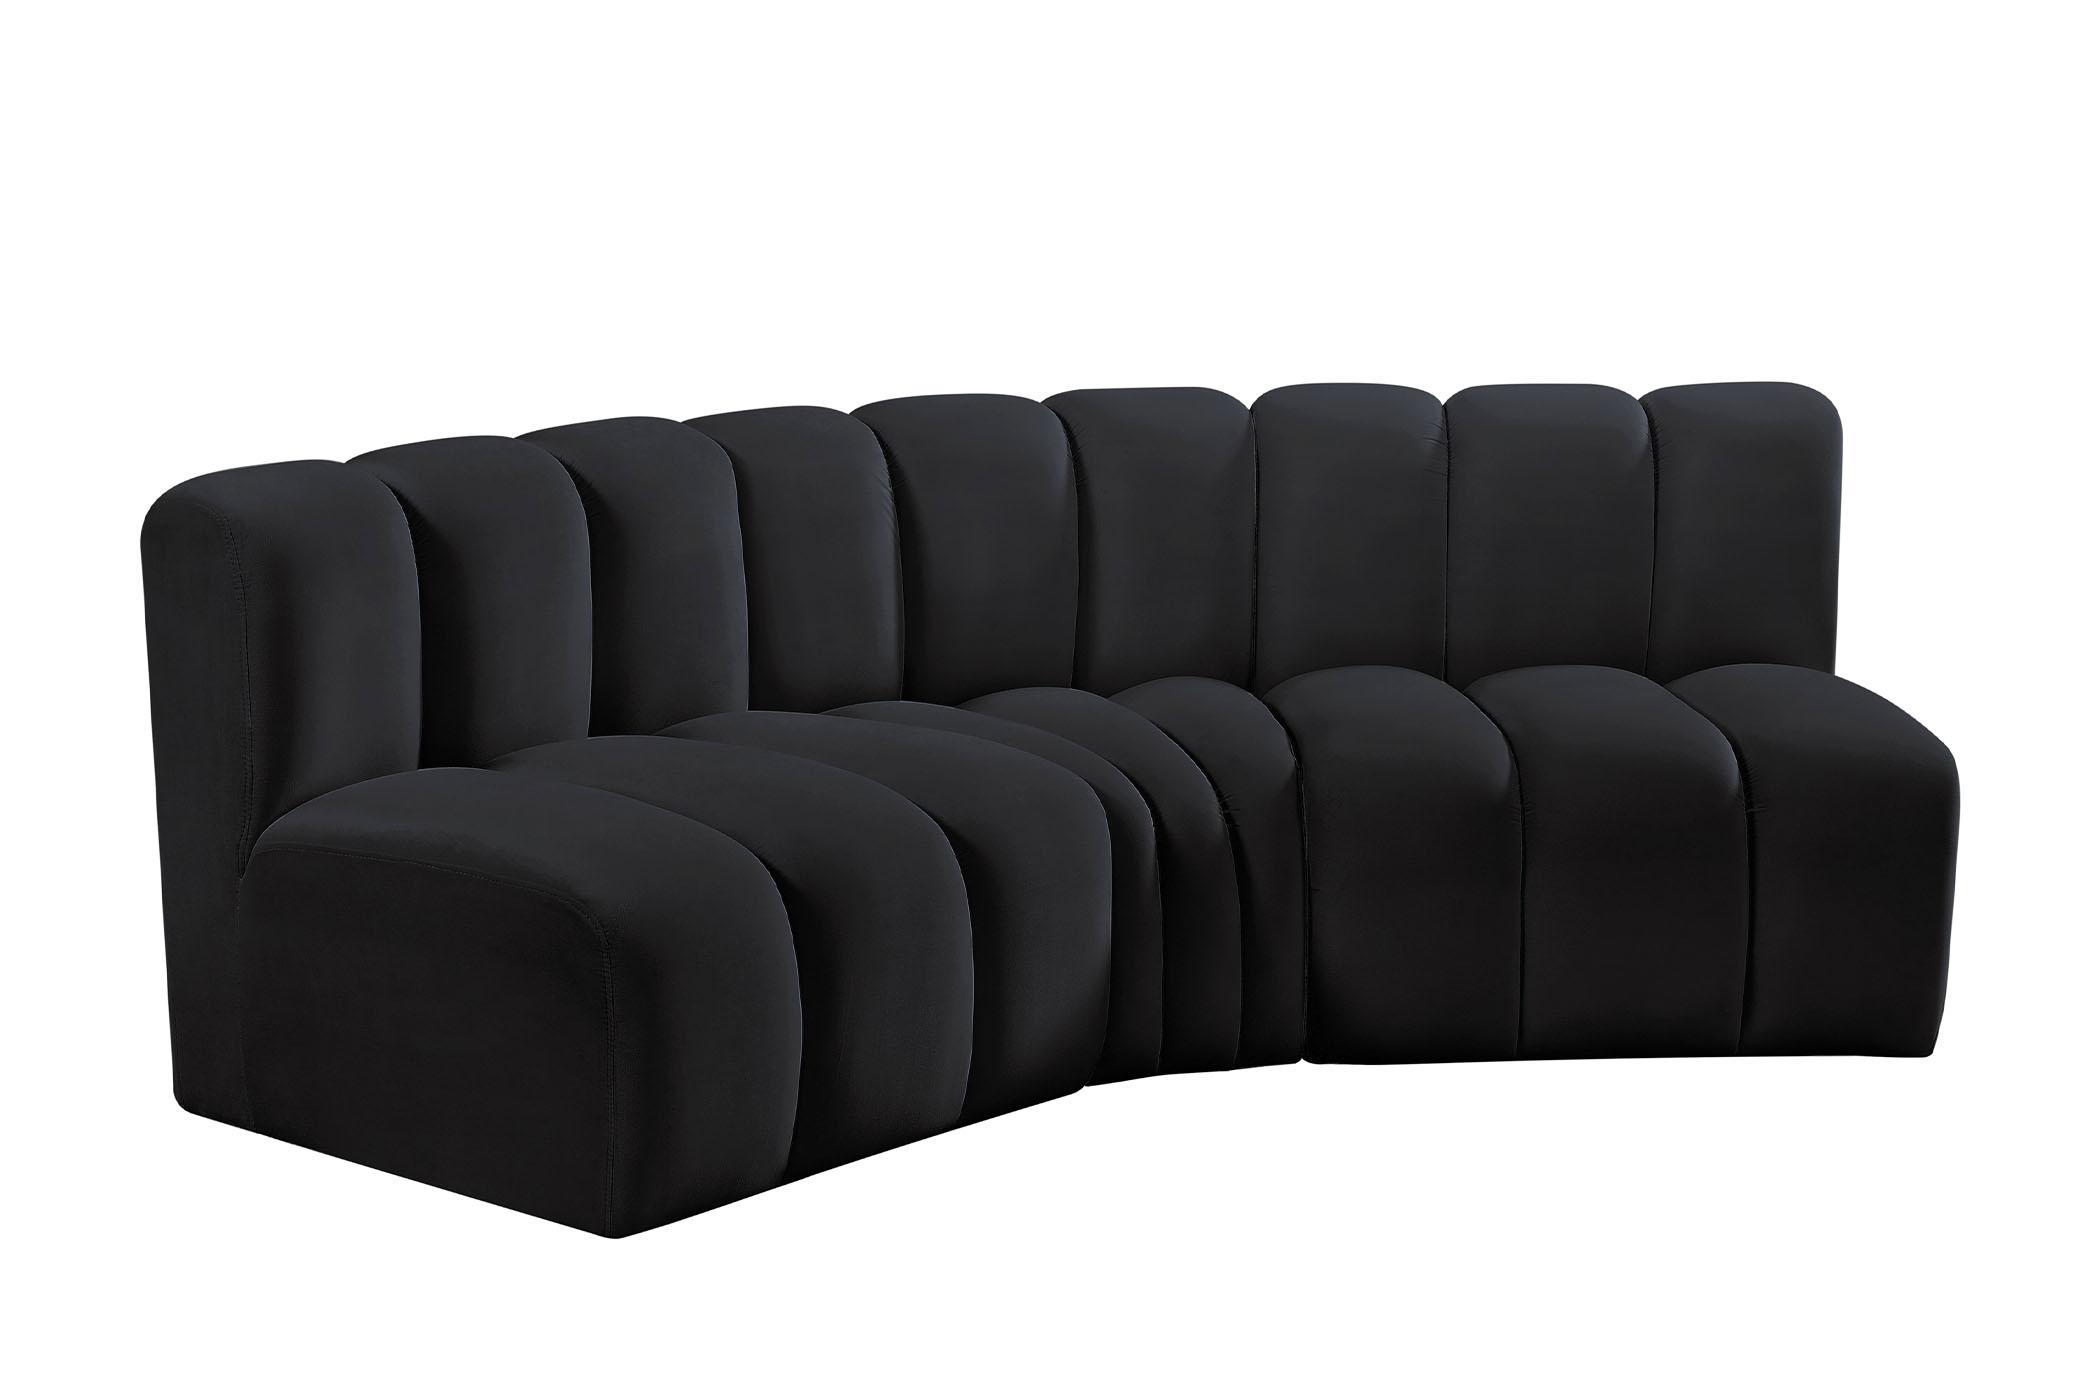 Contemporary, Modern Modular Sectional Sofa ARC 103Black-S3B 103Black-S3B in Black Velvet